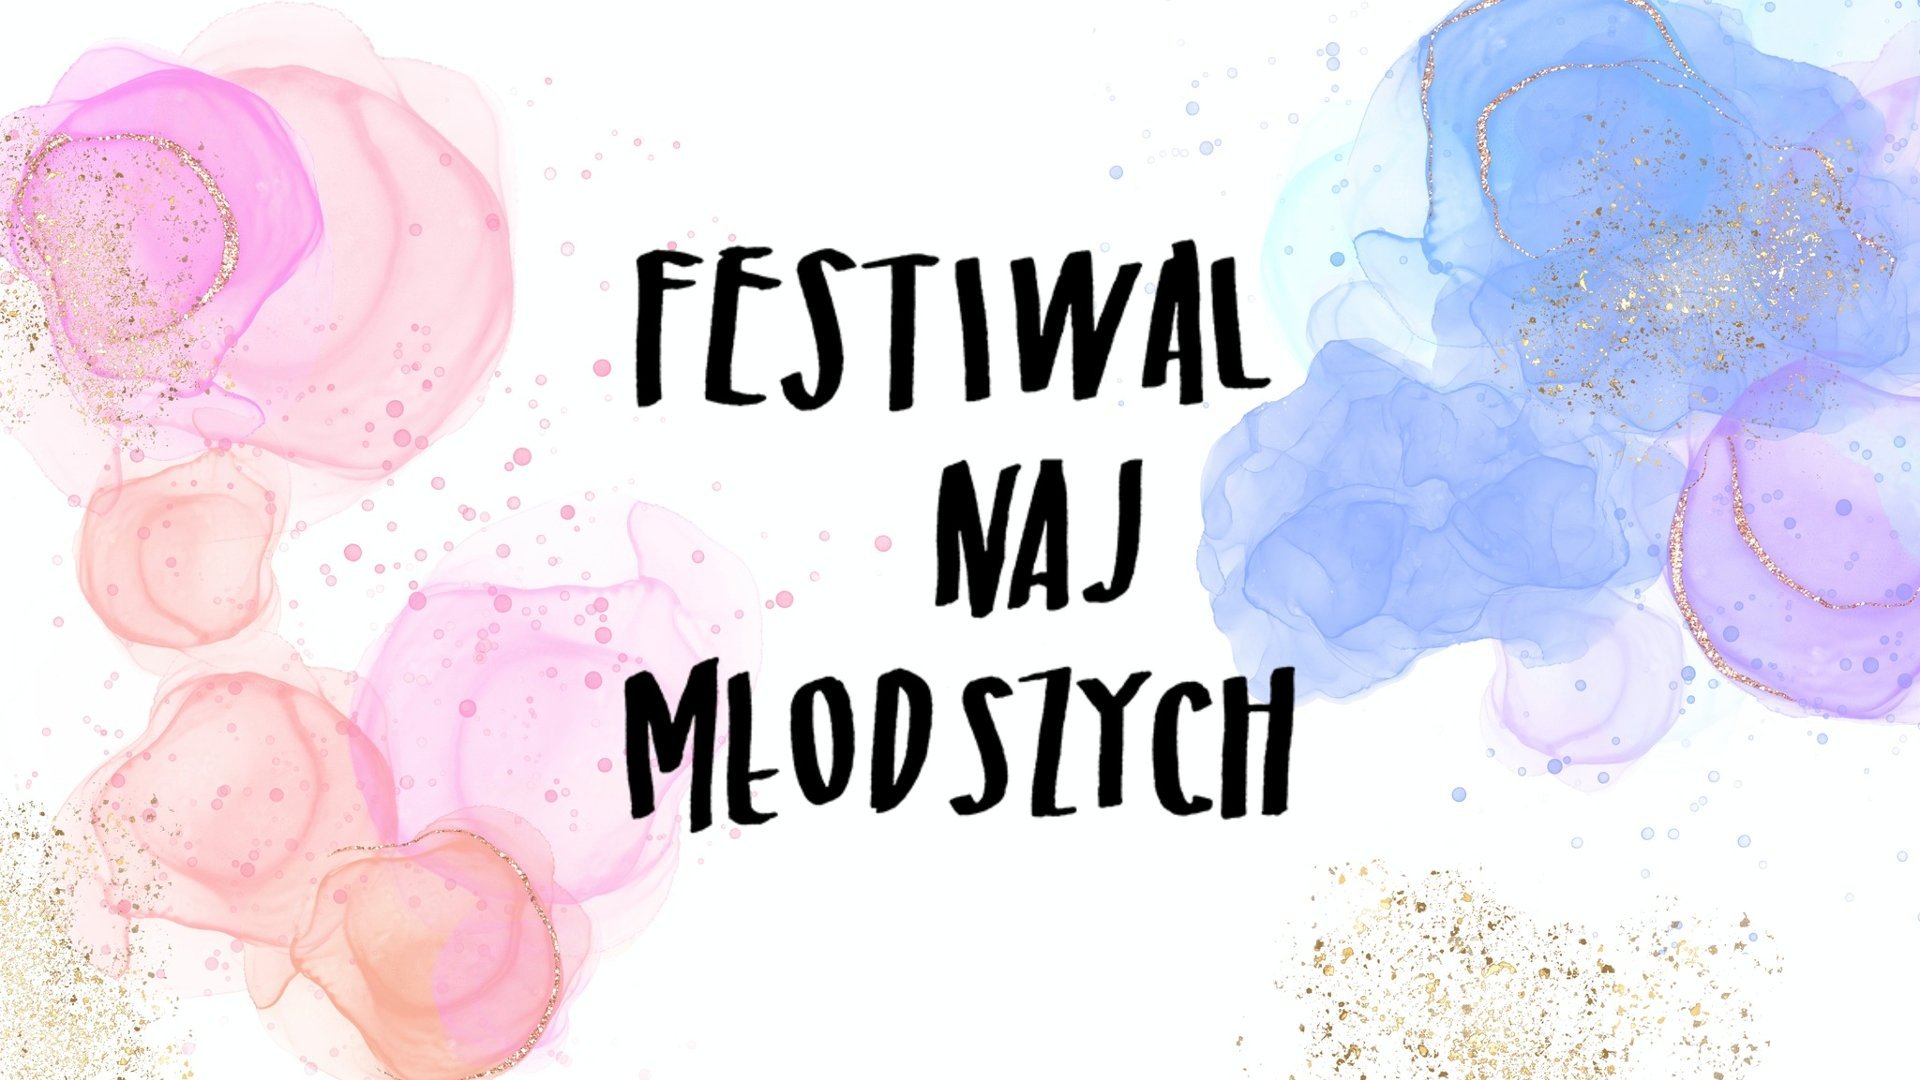 Plakat z napisem "Festiwal najmłodszych" oraz kolorowymi chmurkami dookoła